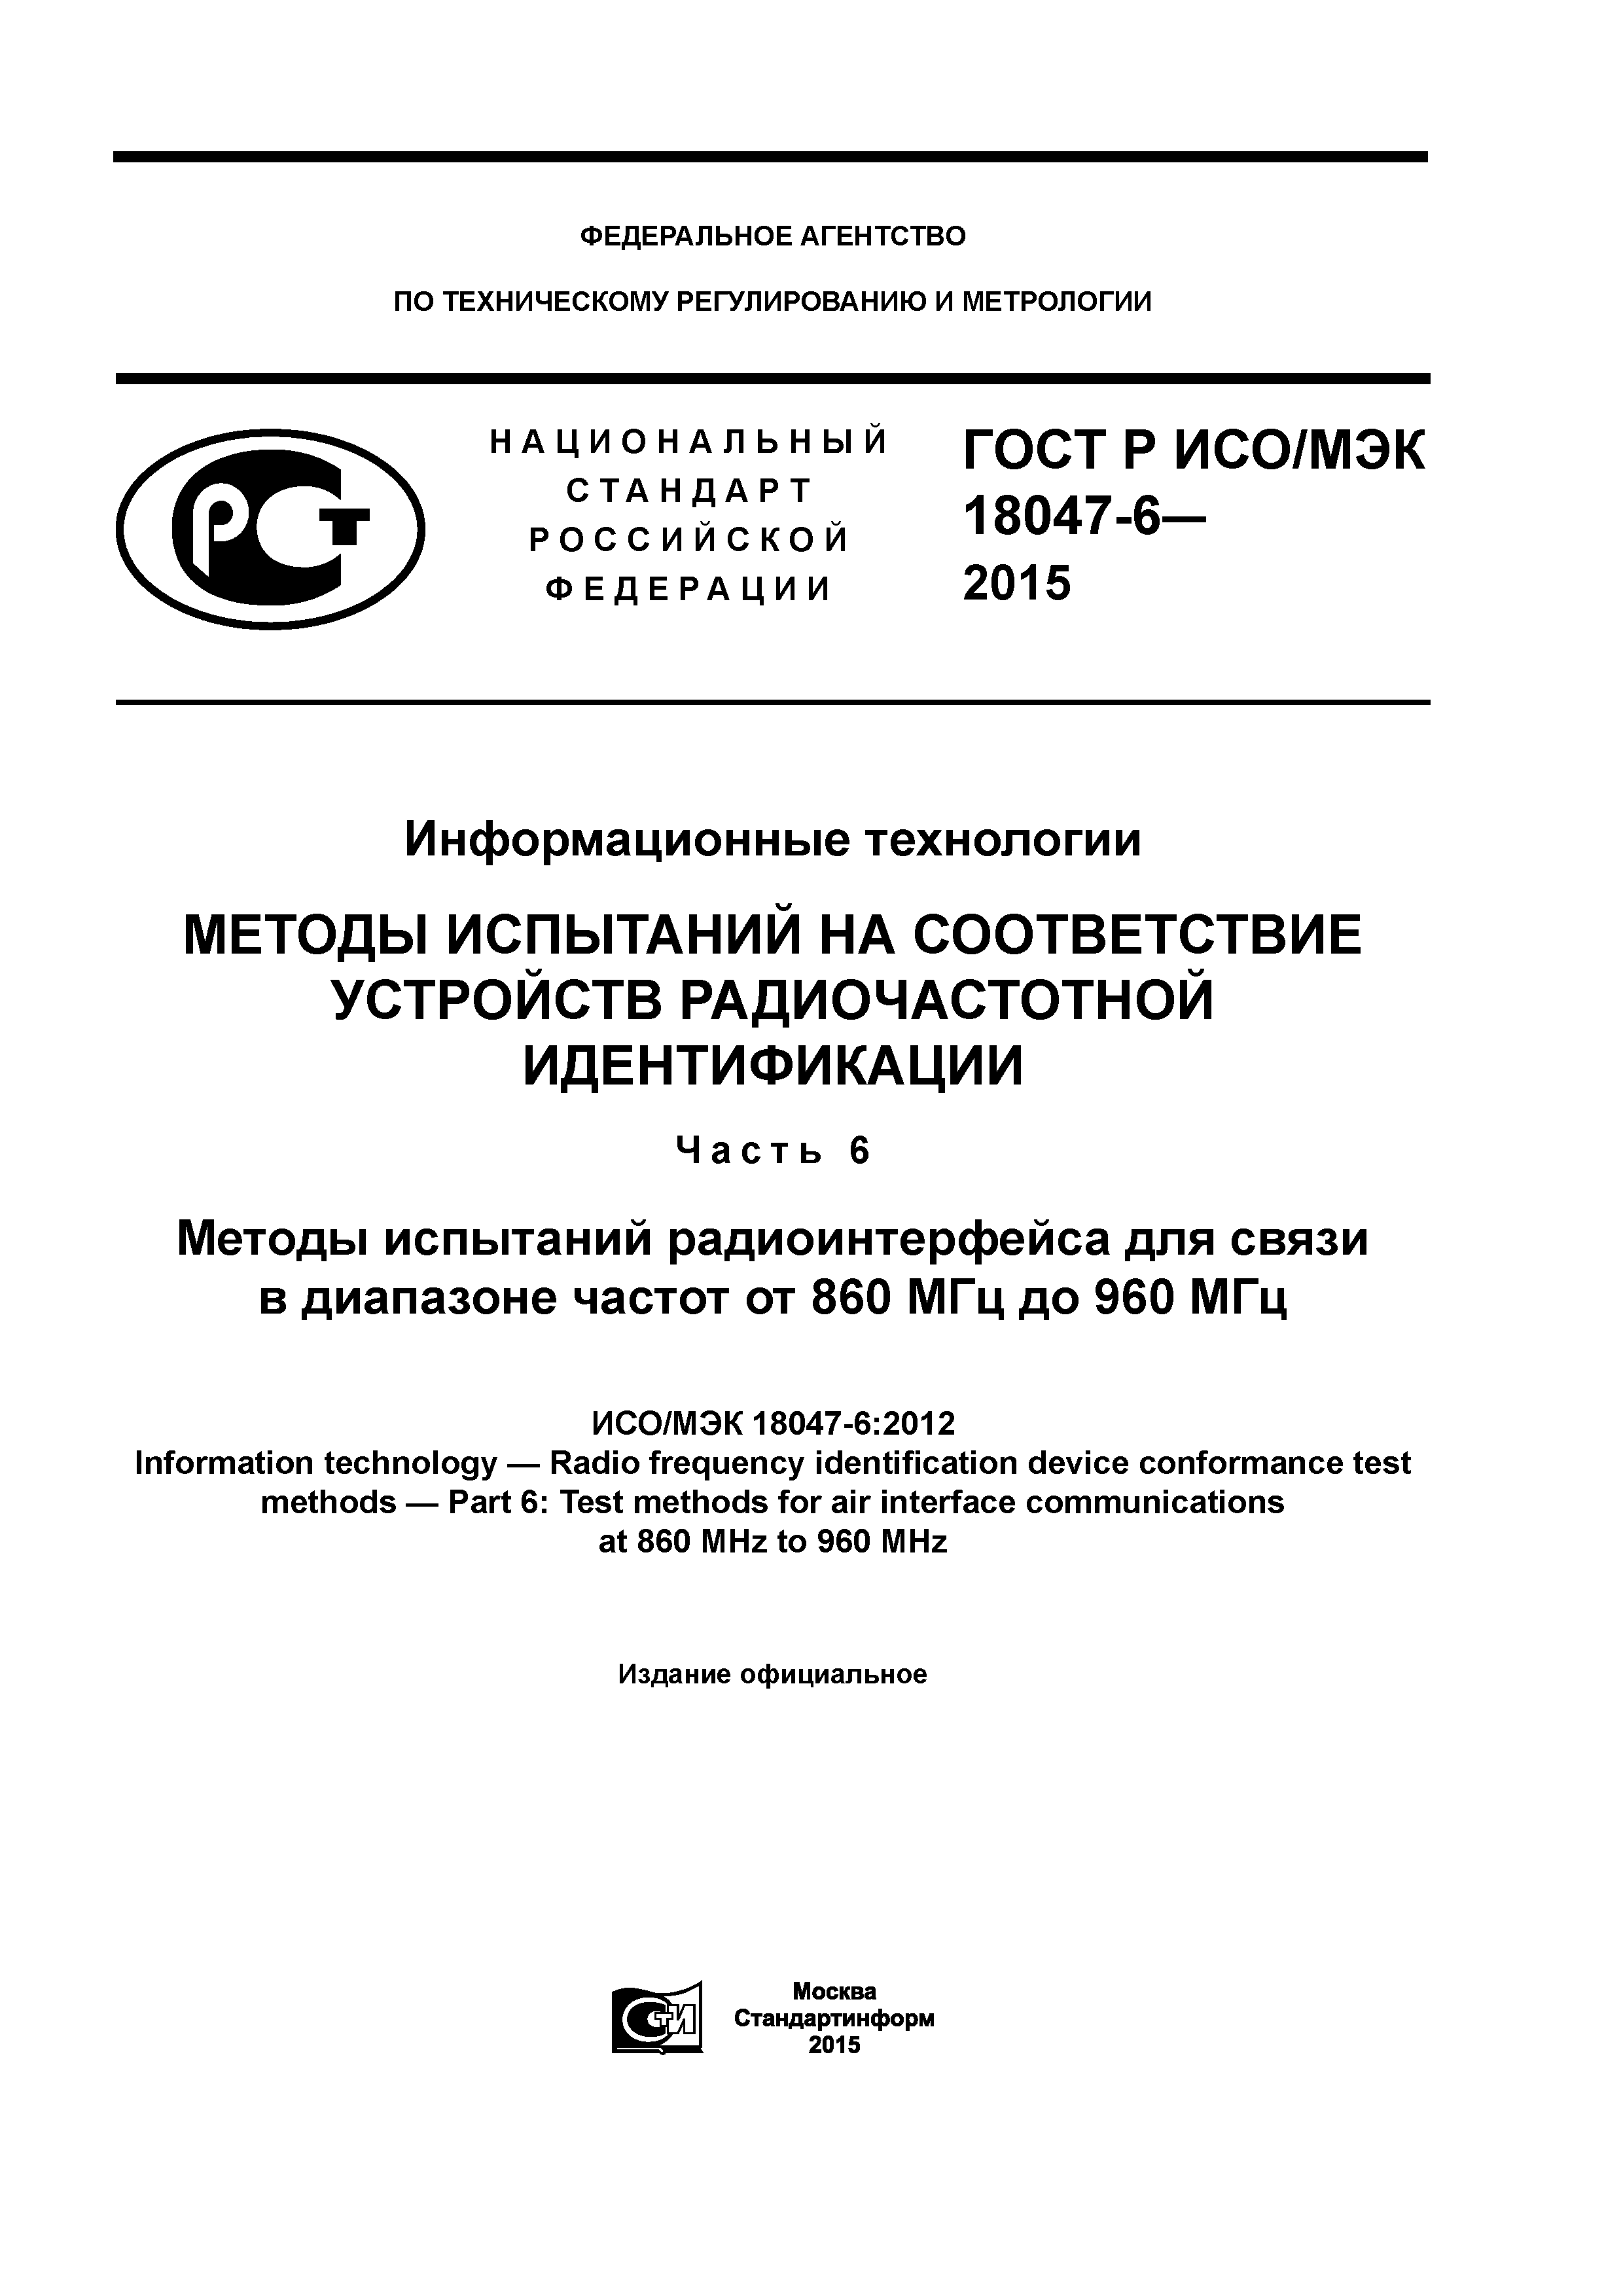 ГОСТ Р ИСО/МЭК 18047-6-2015